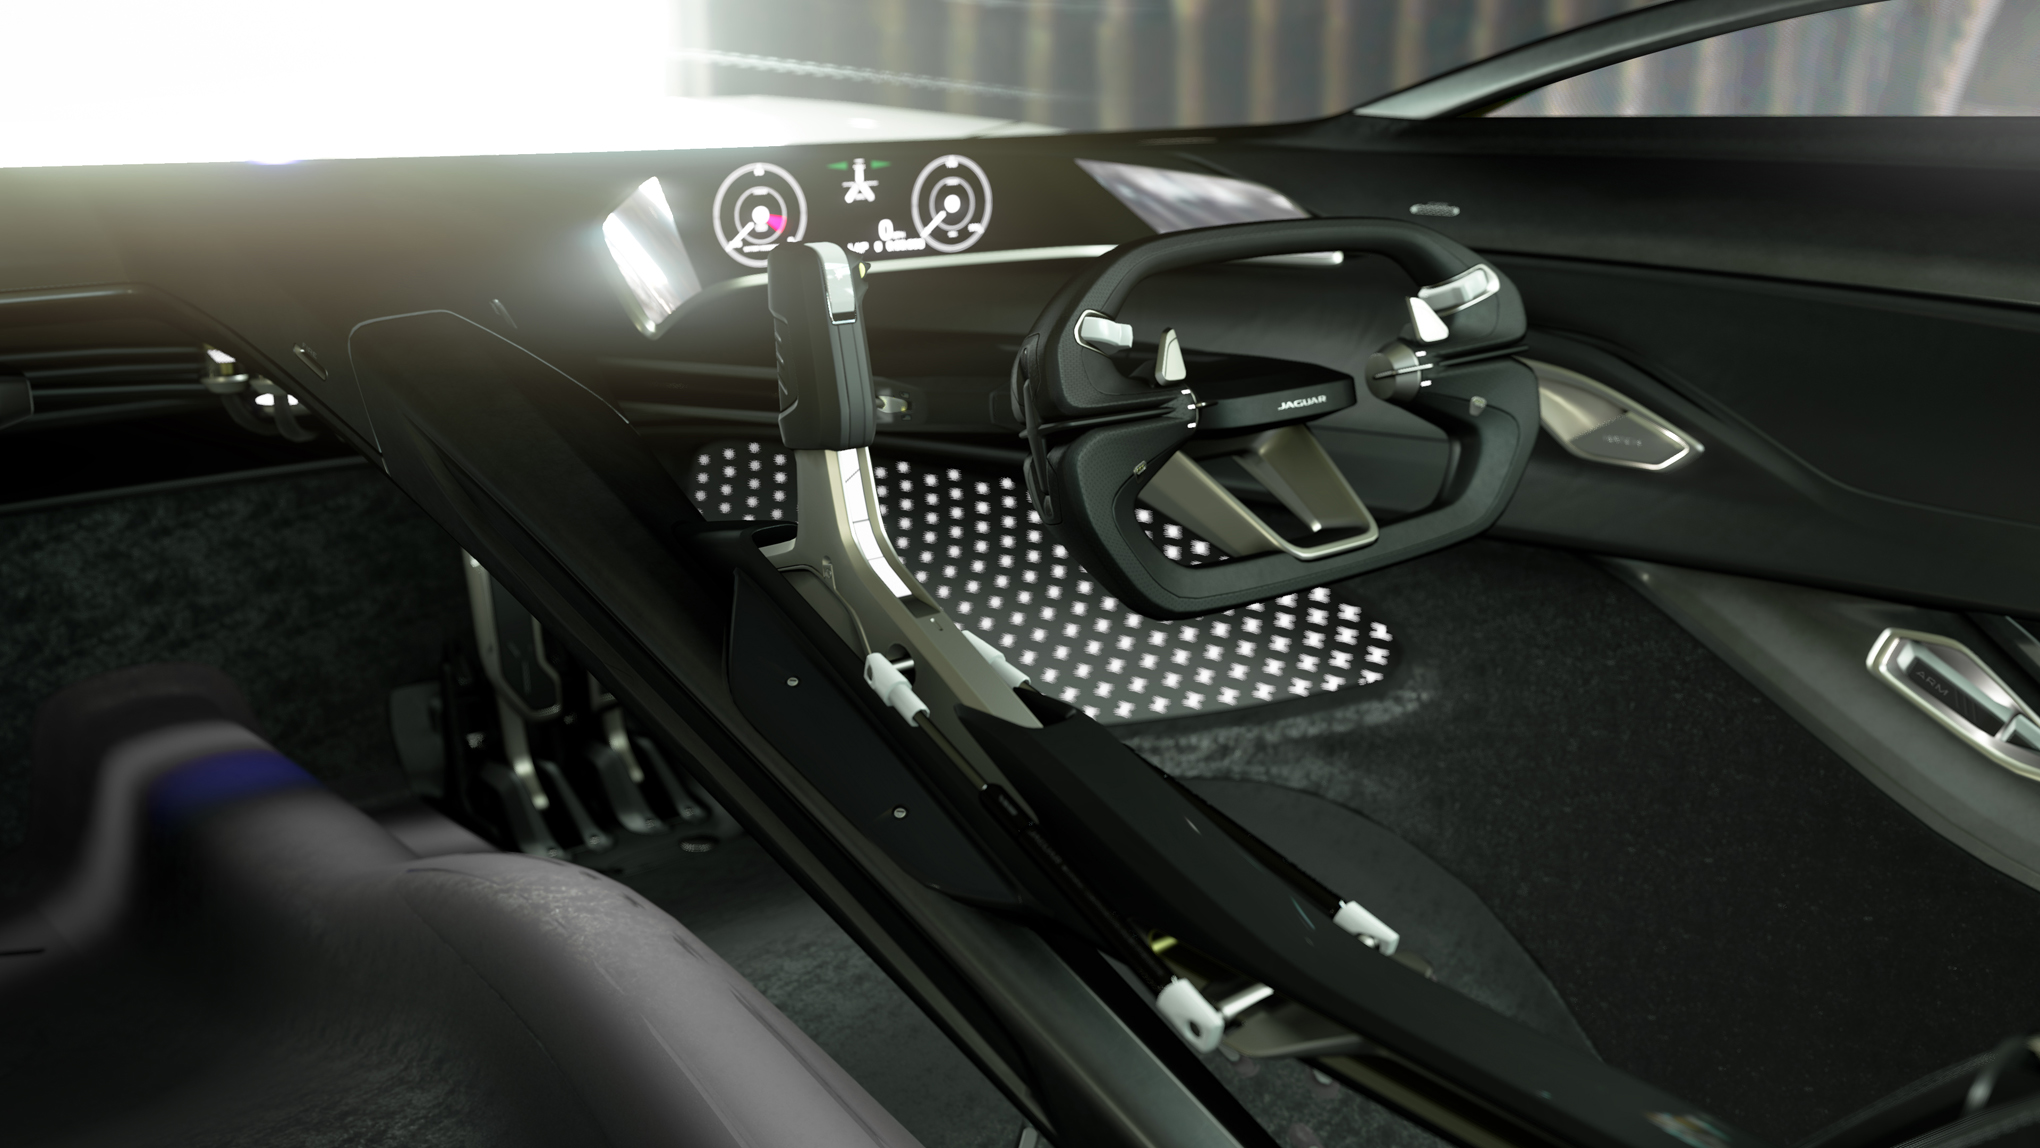 Jaguar giới thiệu concept xe điện đua gầm thấp cực kì đẹp nhưng chỉ có ở trong game